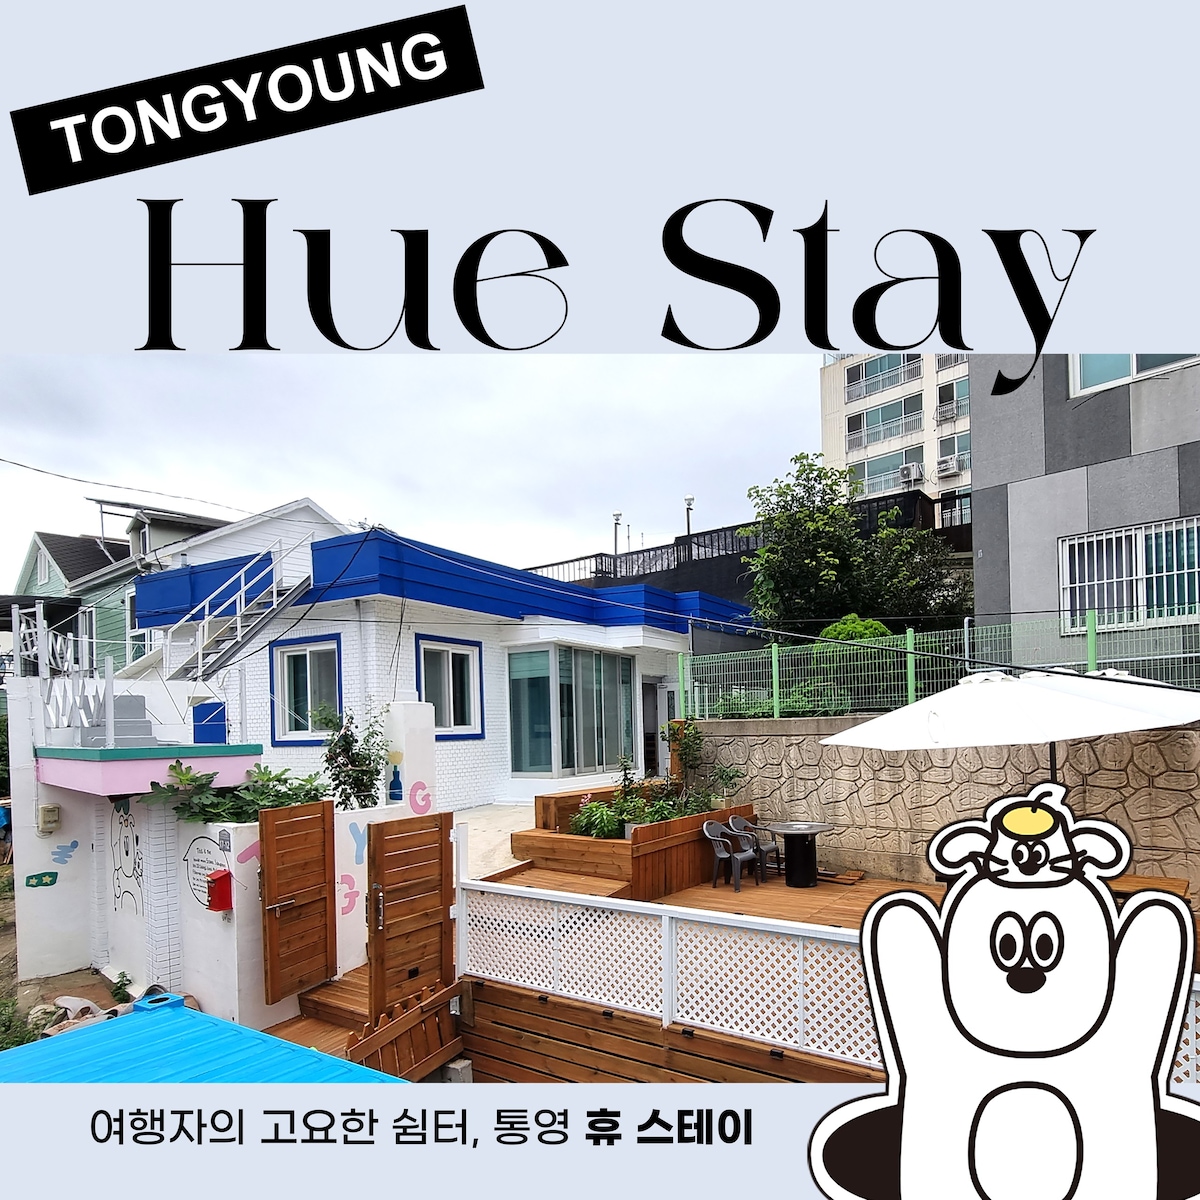 Tongyeong Hugh Stay #完全私密# Tongyeong Daegyo夜景# Tongyeong缆车# Tongyeong Rooji # Tongyeong Sea Taxi